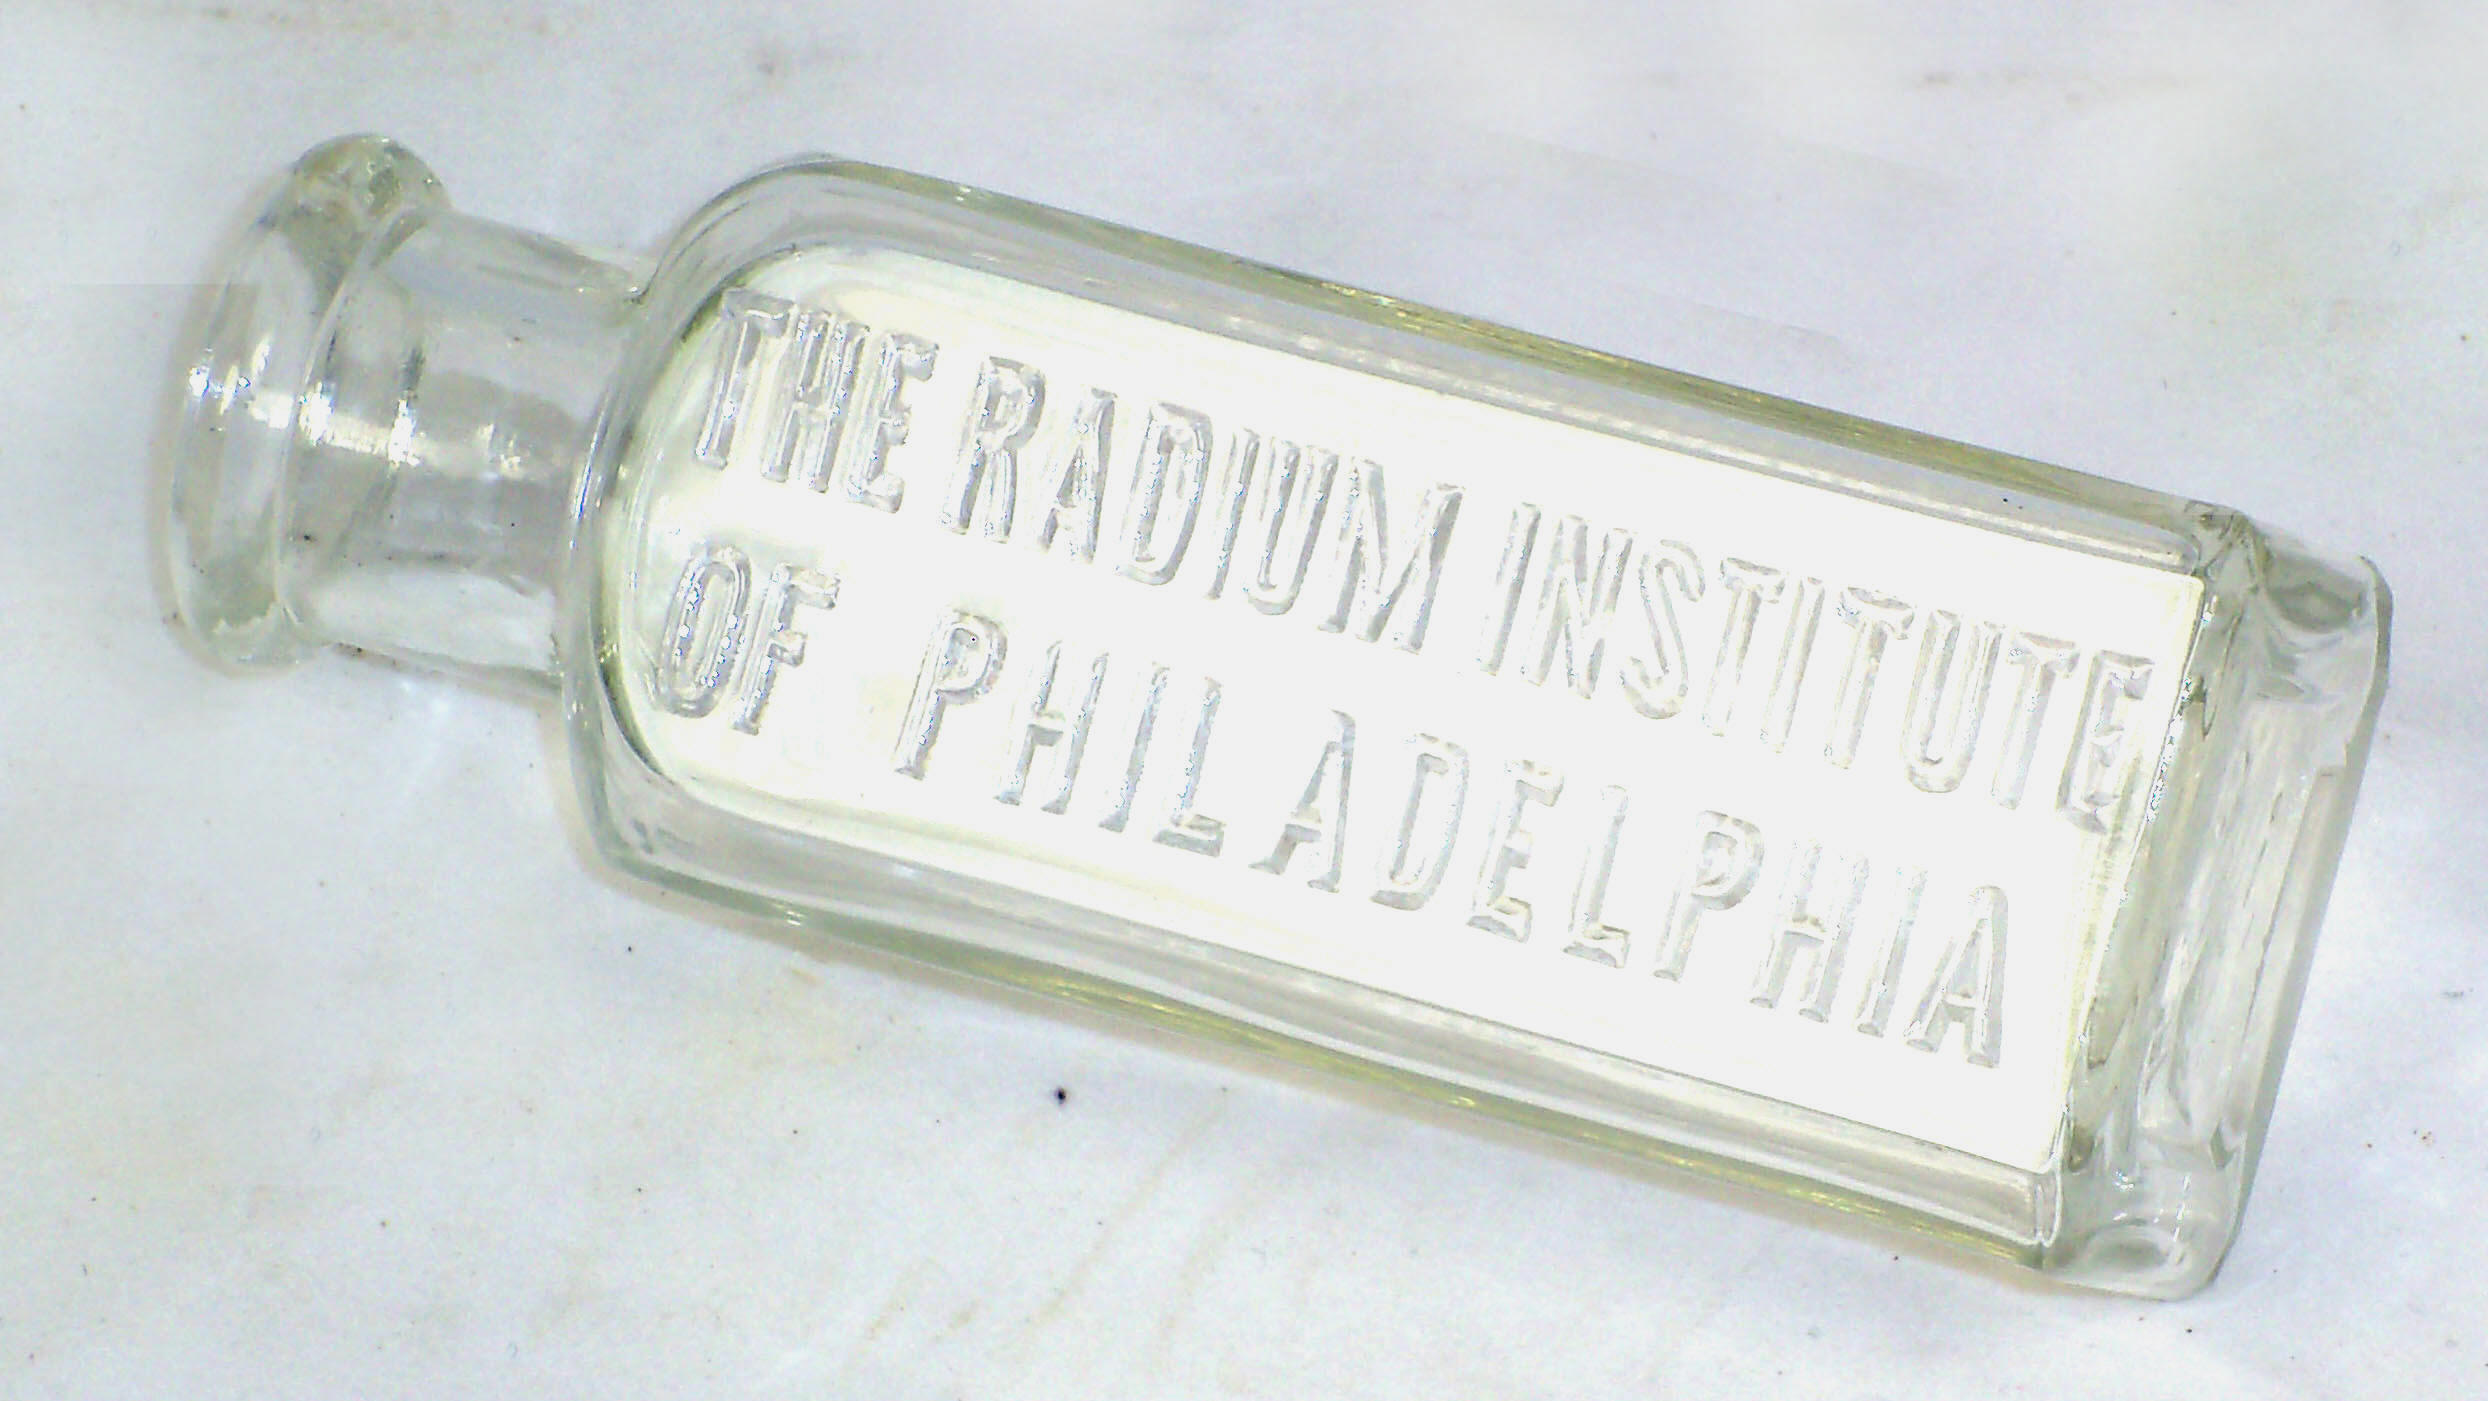 Radium Institute of Philadelphia Bottle